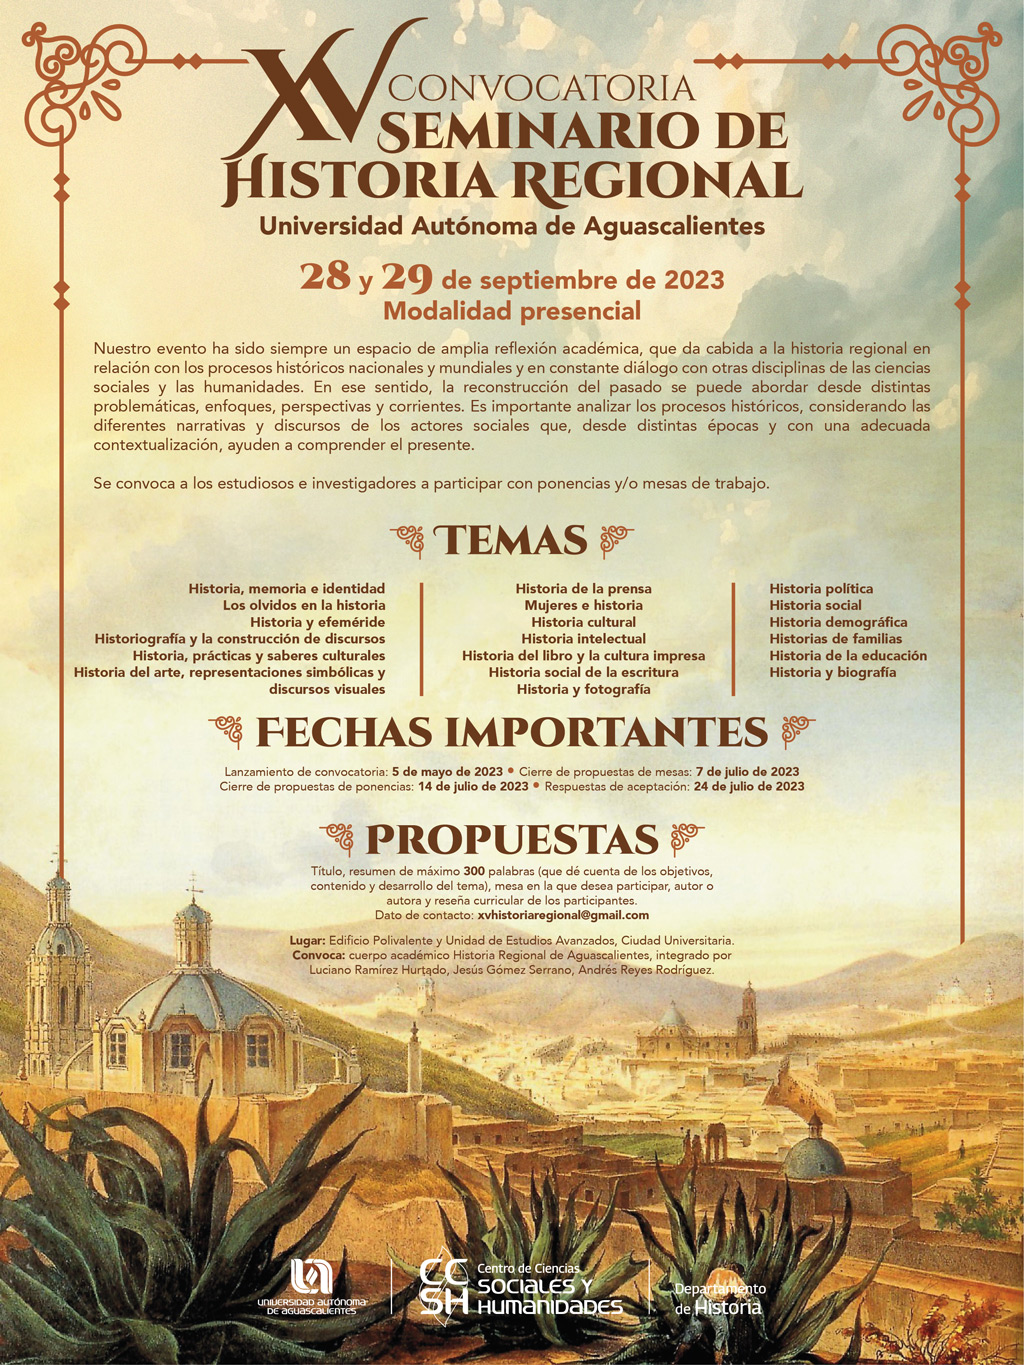 Convocatoria del XV Seminario de Historia Regional